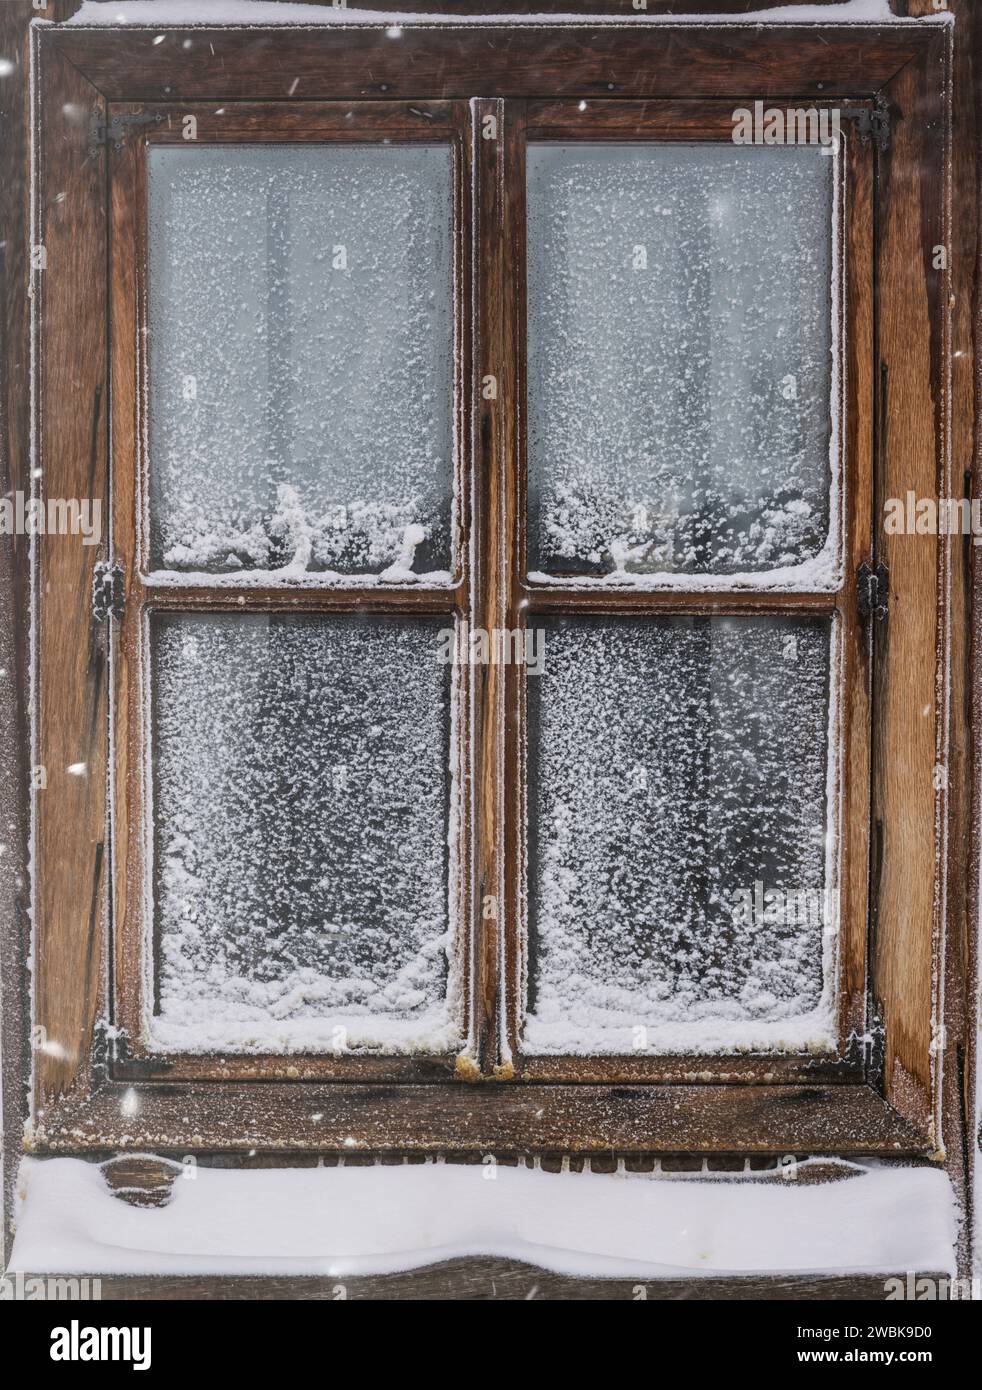 Vieille fenêtre en bois couverte de neige avec vitre gelée Banque D'Images